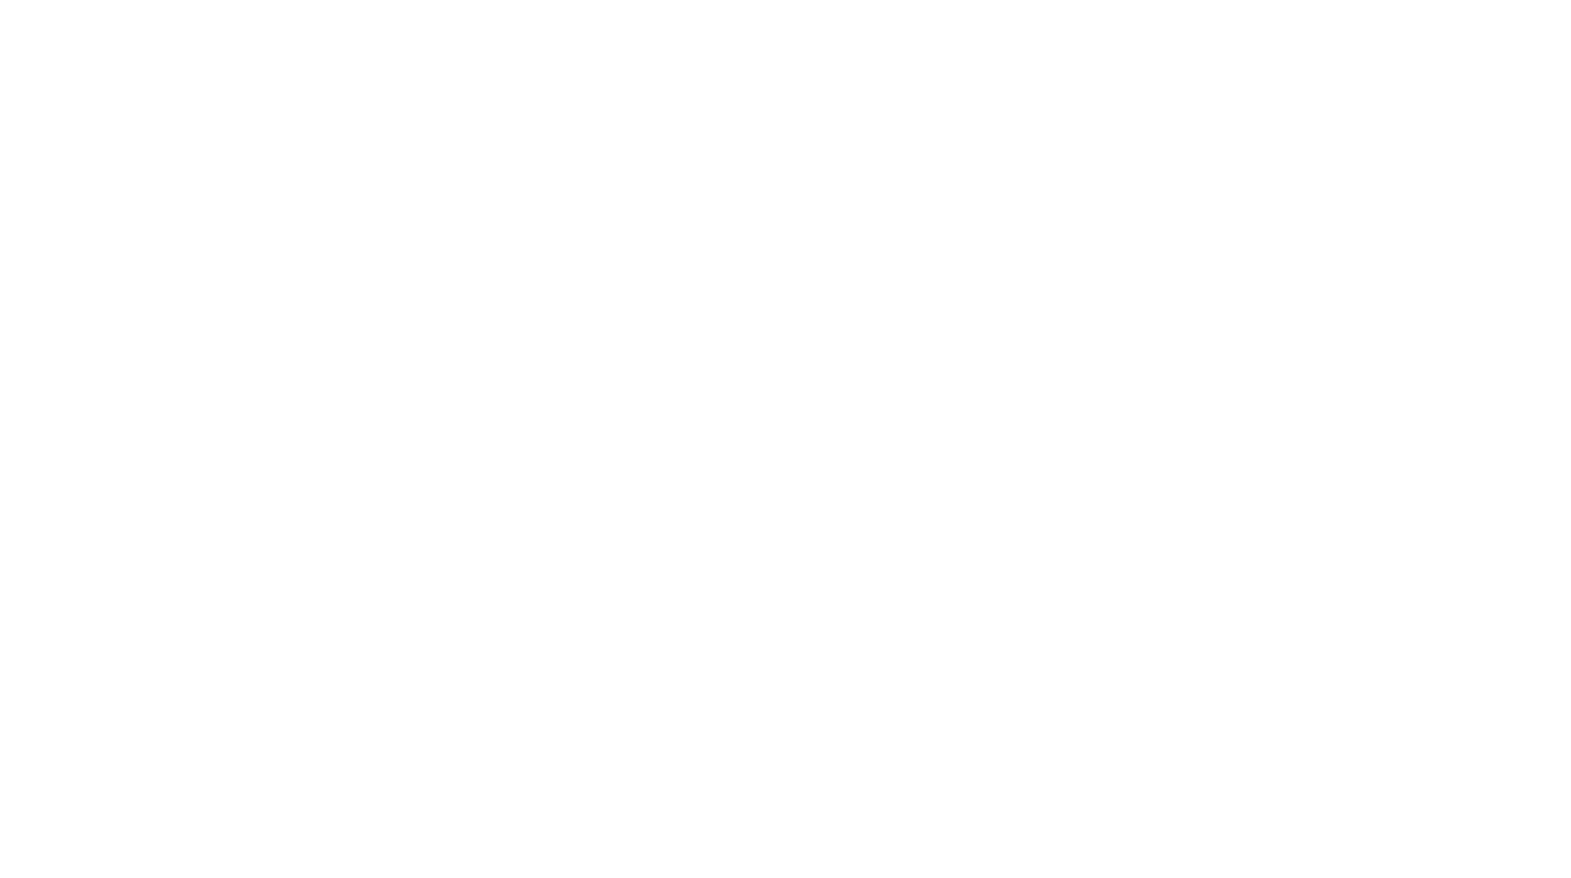 Veru logo large for dark backgrounds (transparent PNG)